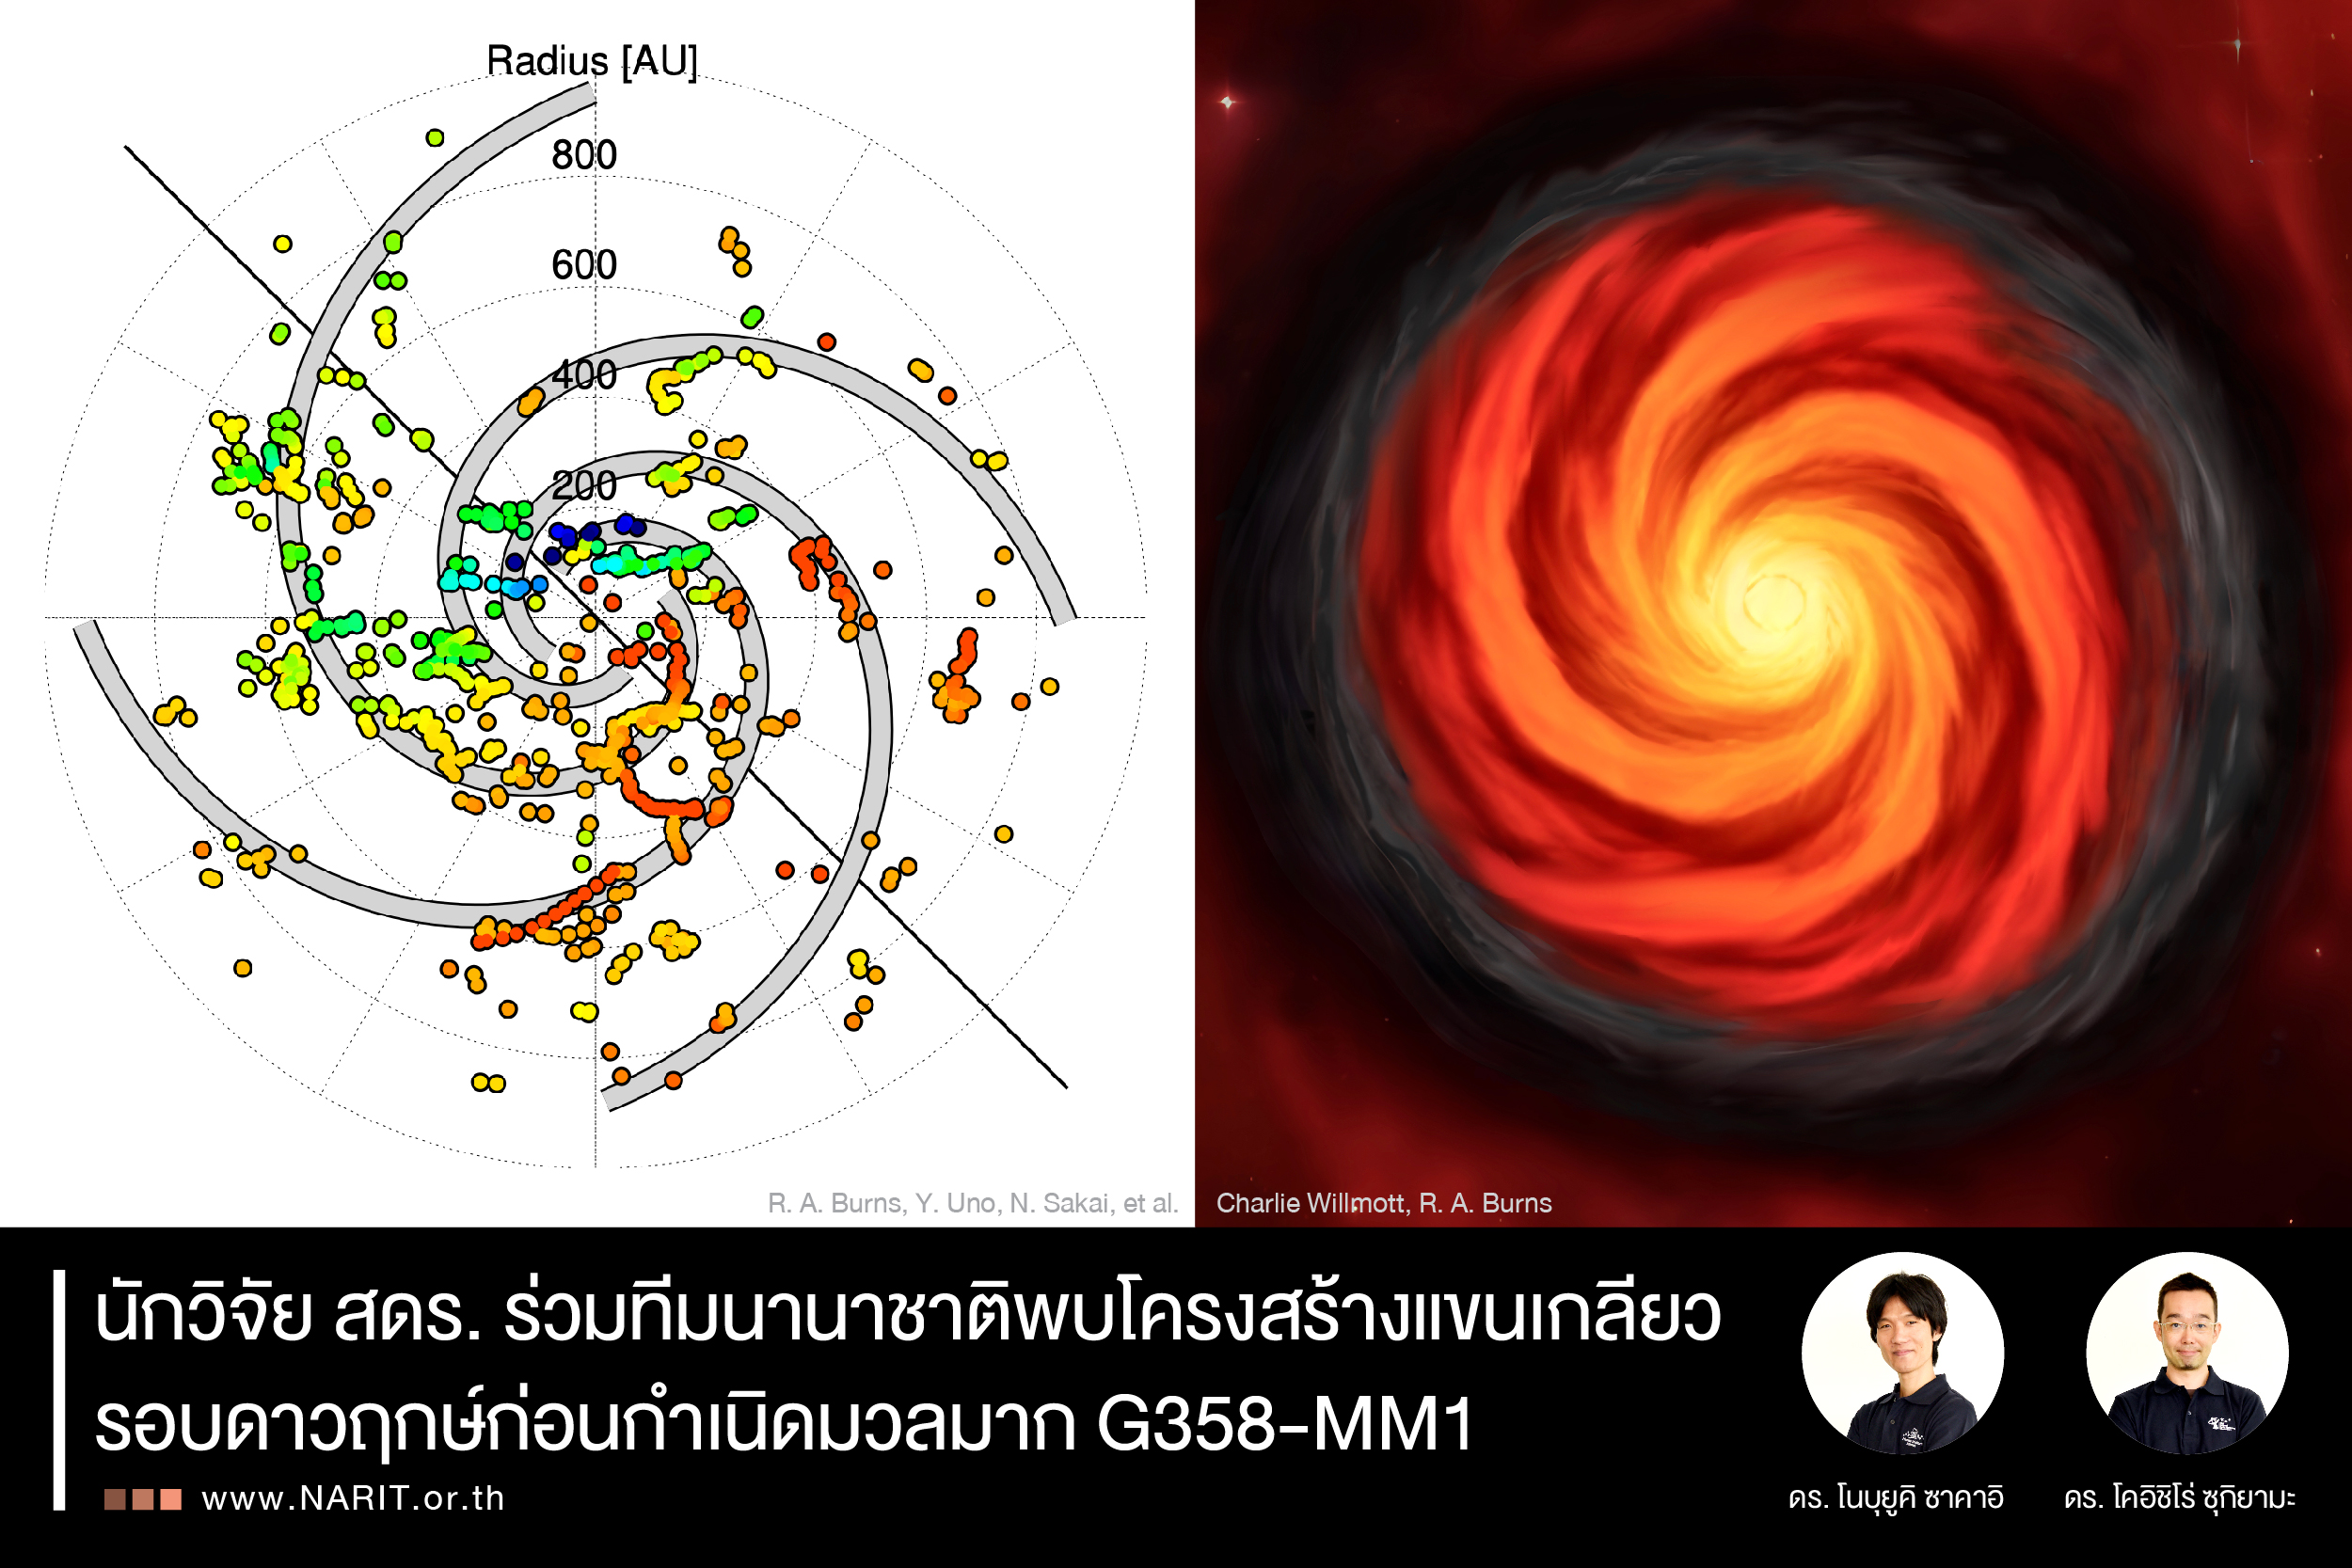 นักวิจัย สดร. ร่วมทีมนานาชาติพบโครงสร้างแขนเกลียว รอบดาวฤกษ์ก่อนกำเนิดมวลมาก G358-MM1 